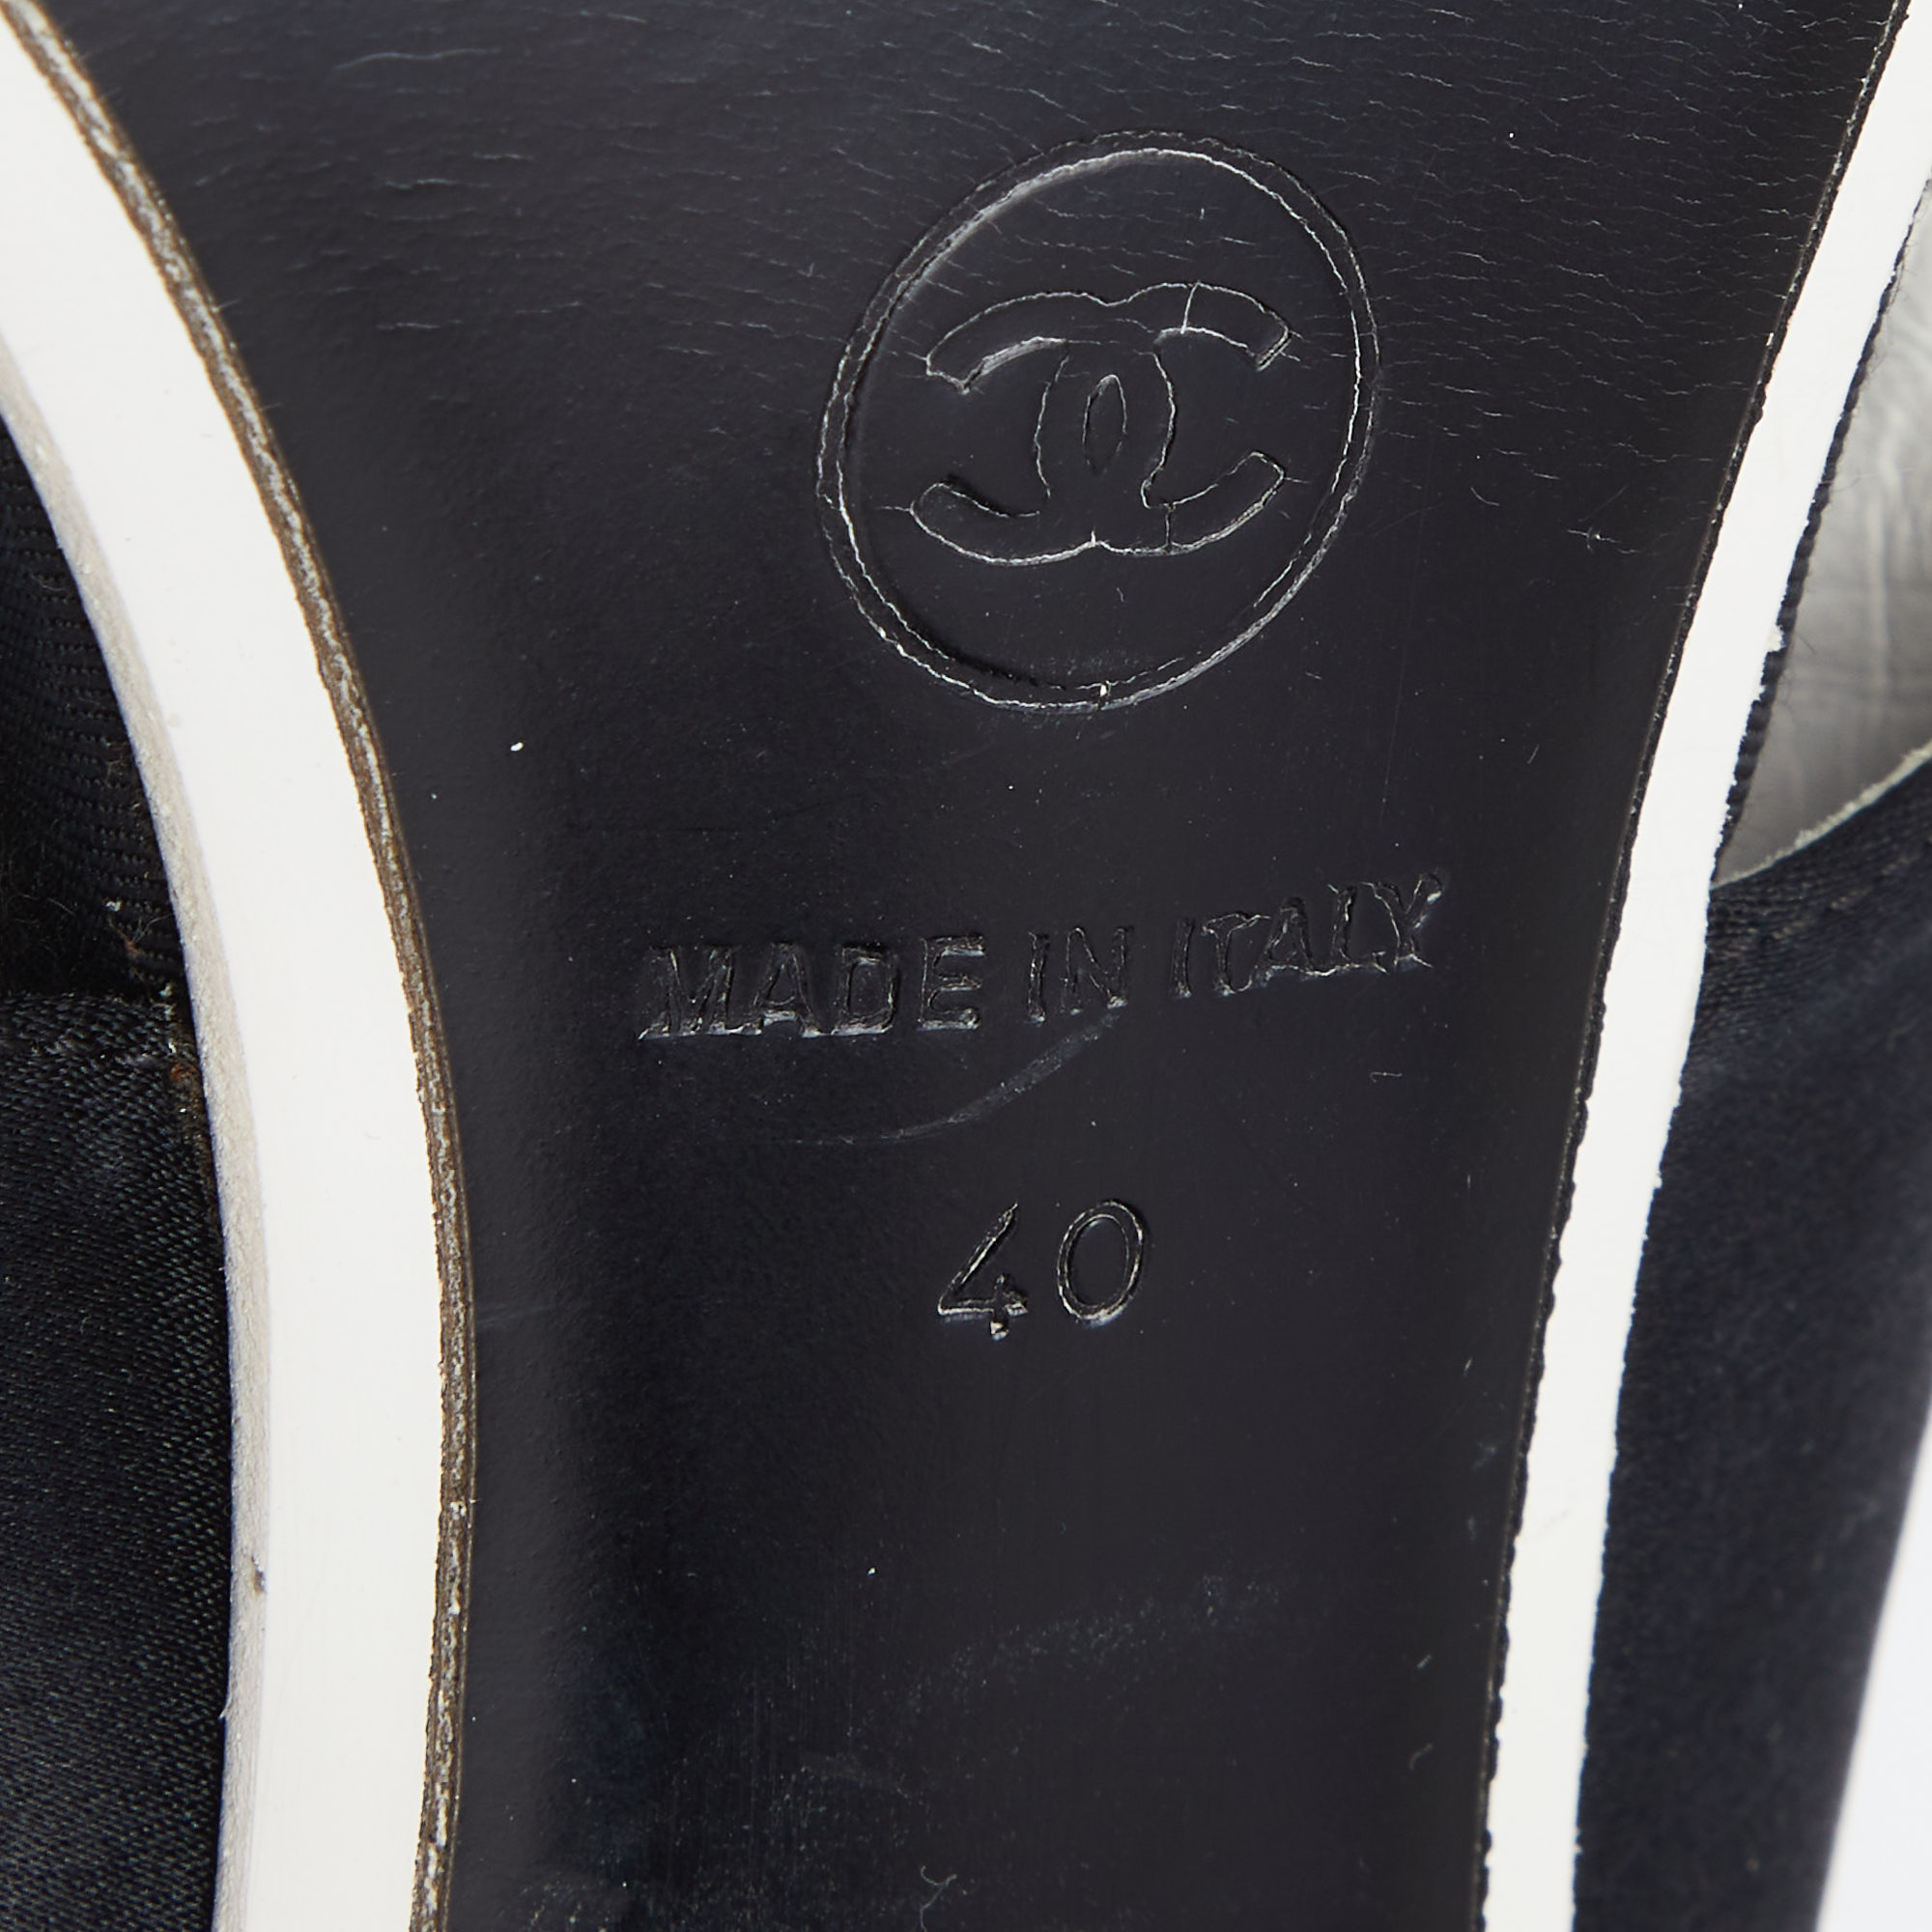 Chanel Black Satin And PVC Embellished Slingback Sandals Size 40